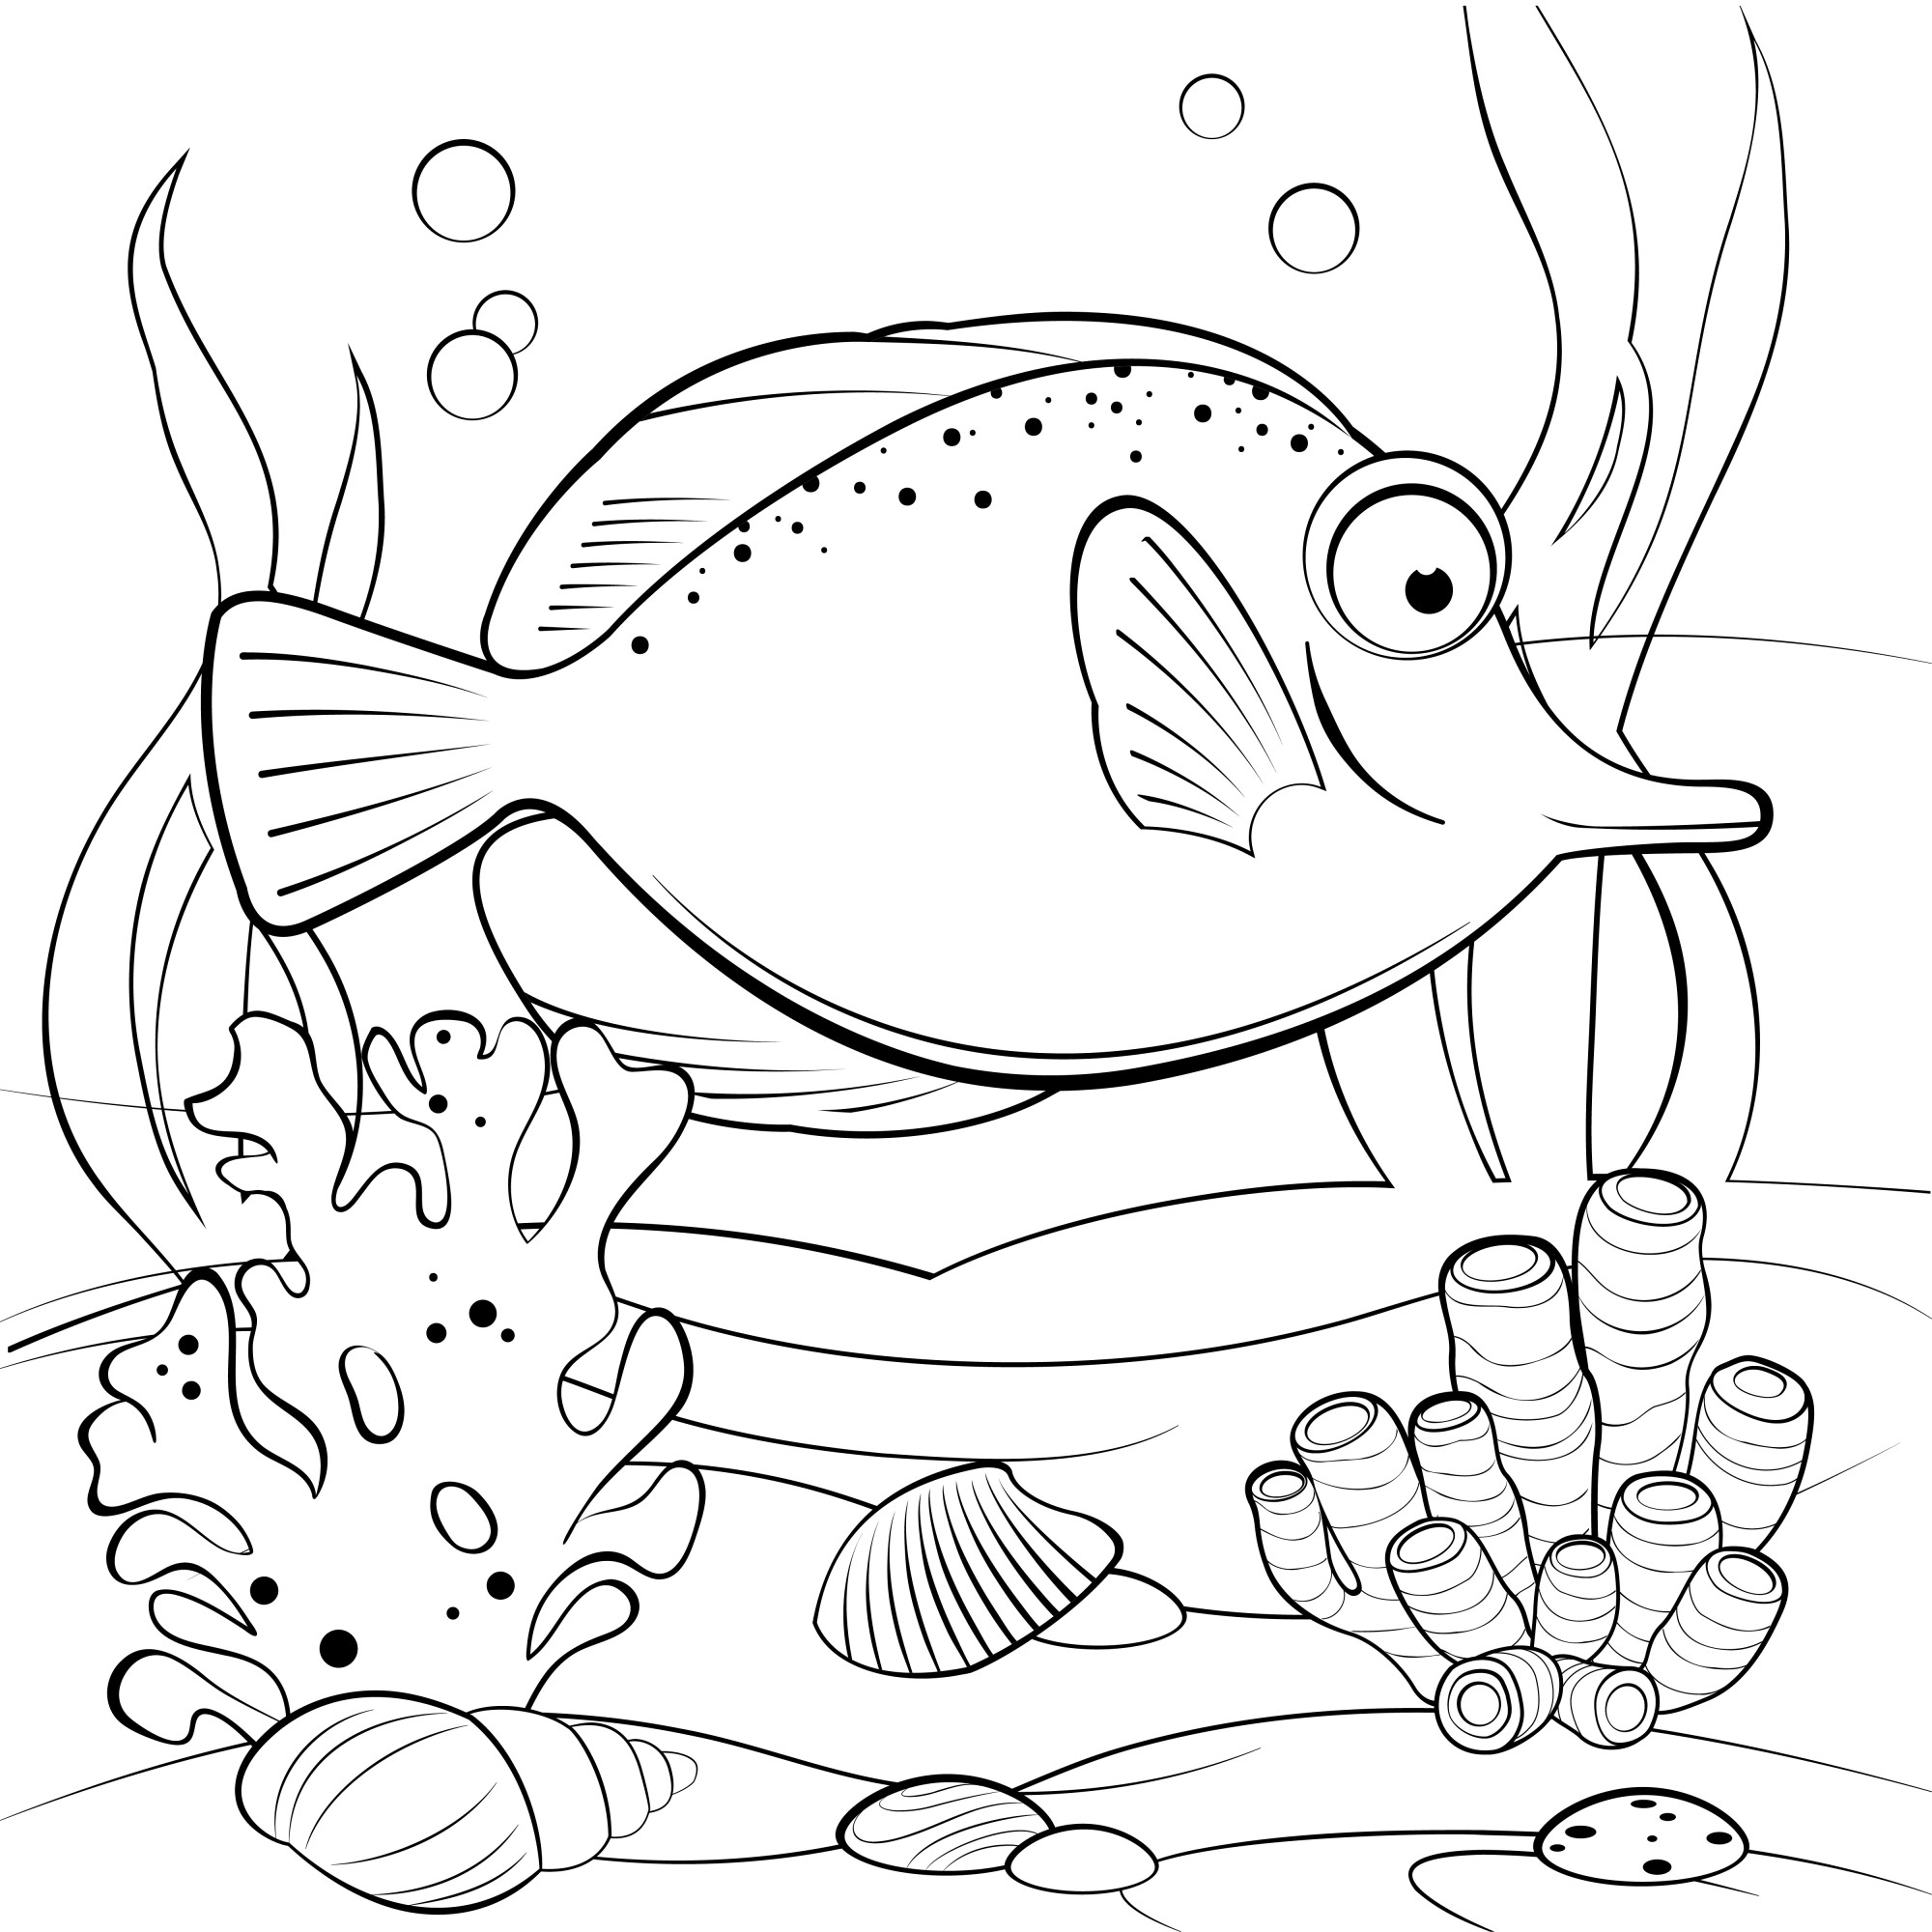 Раскраска для детей: тропическая рыба с кораллами